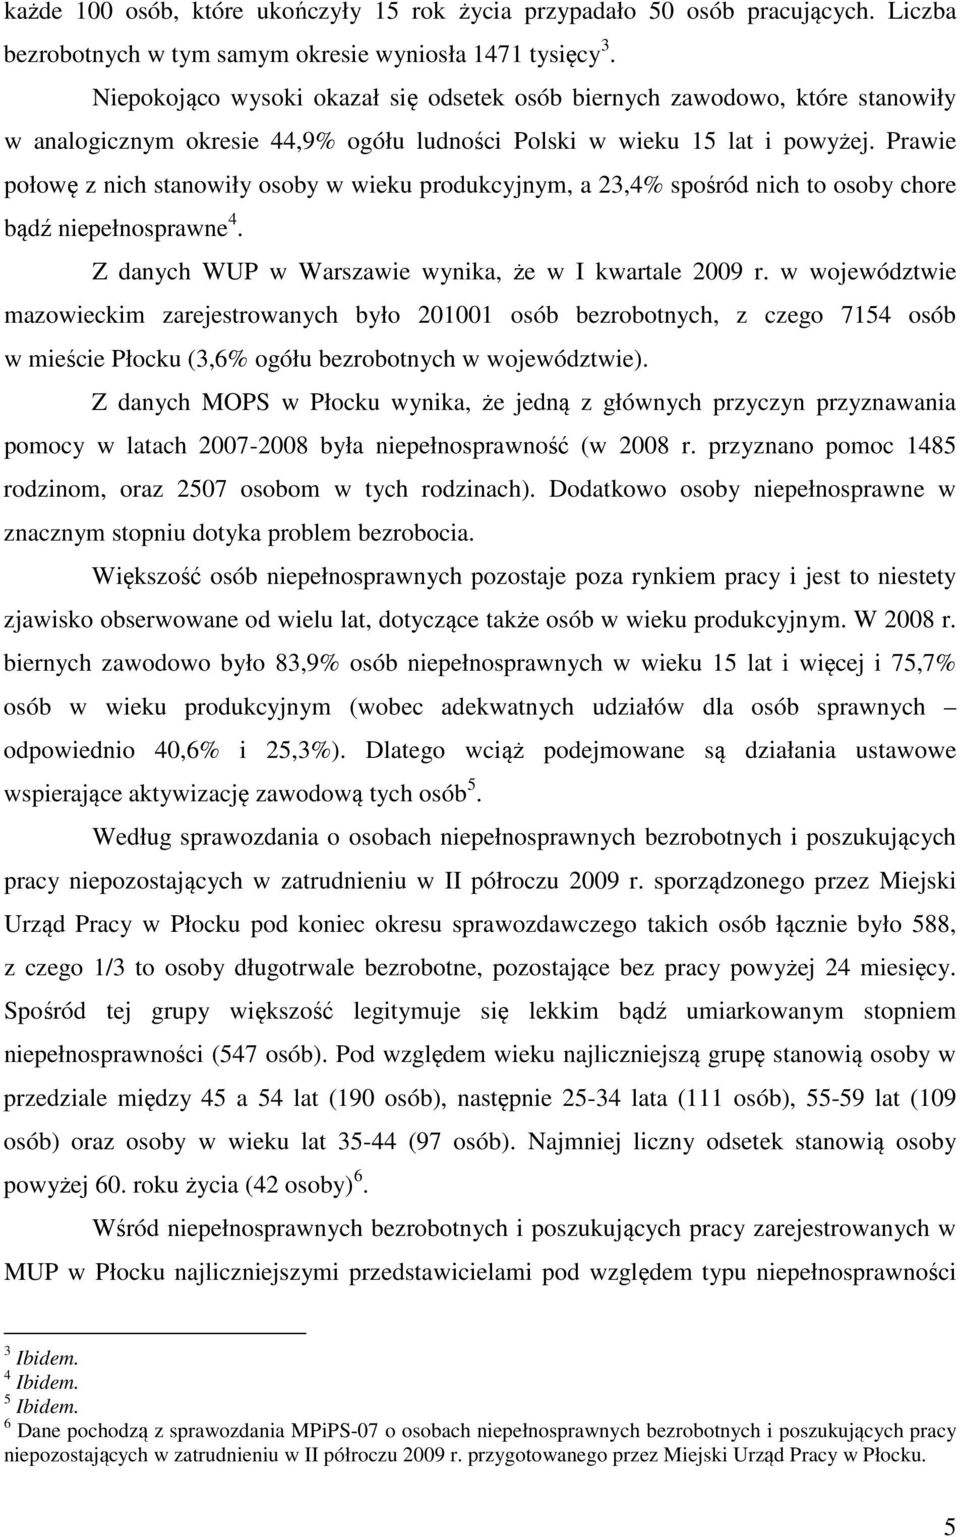 Prawie połowę z nich stanowiły osoby w wieku produkcyjnym, a 23,4% spośród nich to osoby chore bądź niepełnosprawne 4. Z danych WUP w Warszawie wynika, że w I kwartale 2009 r.